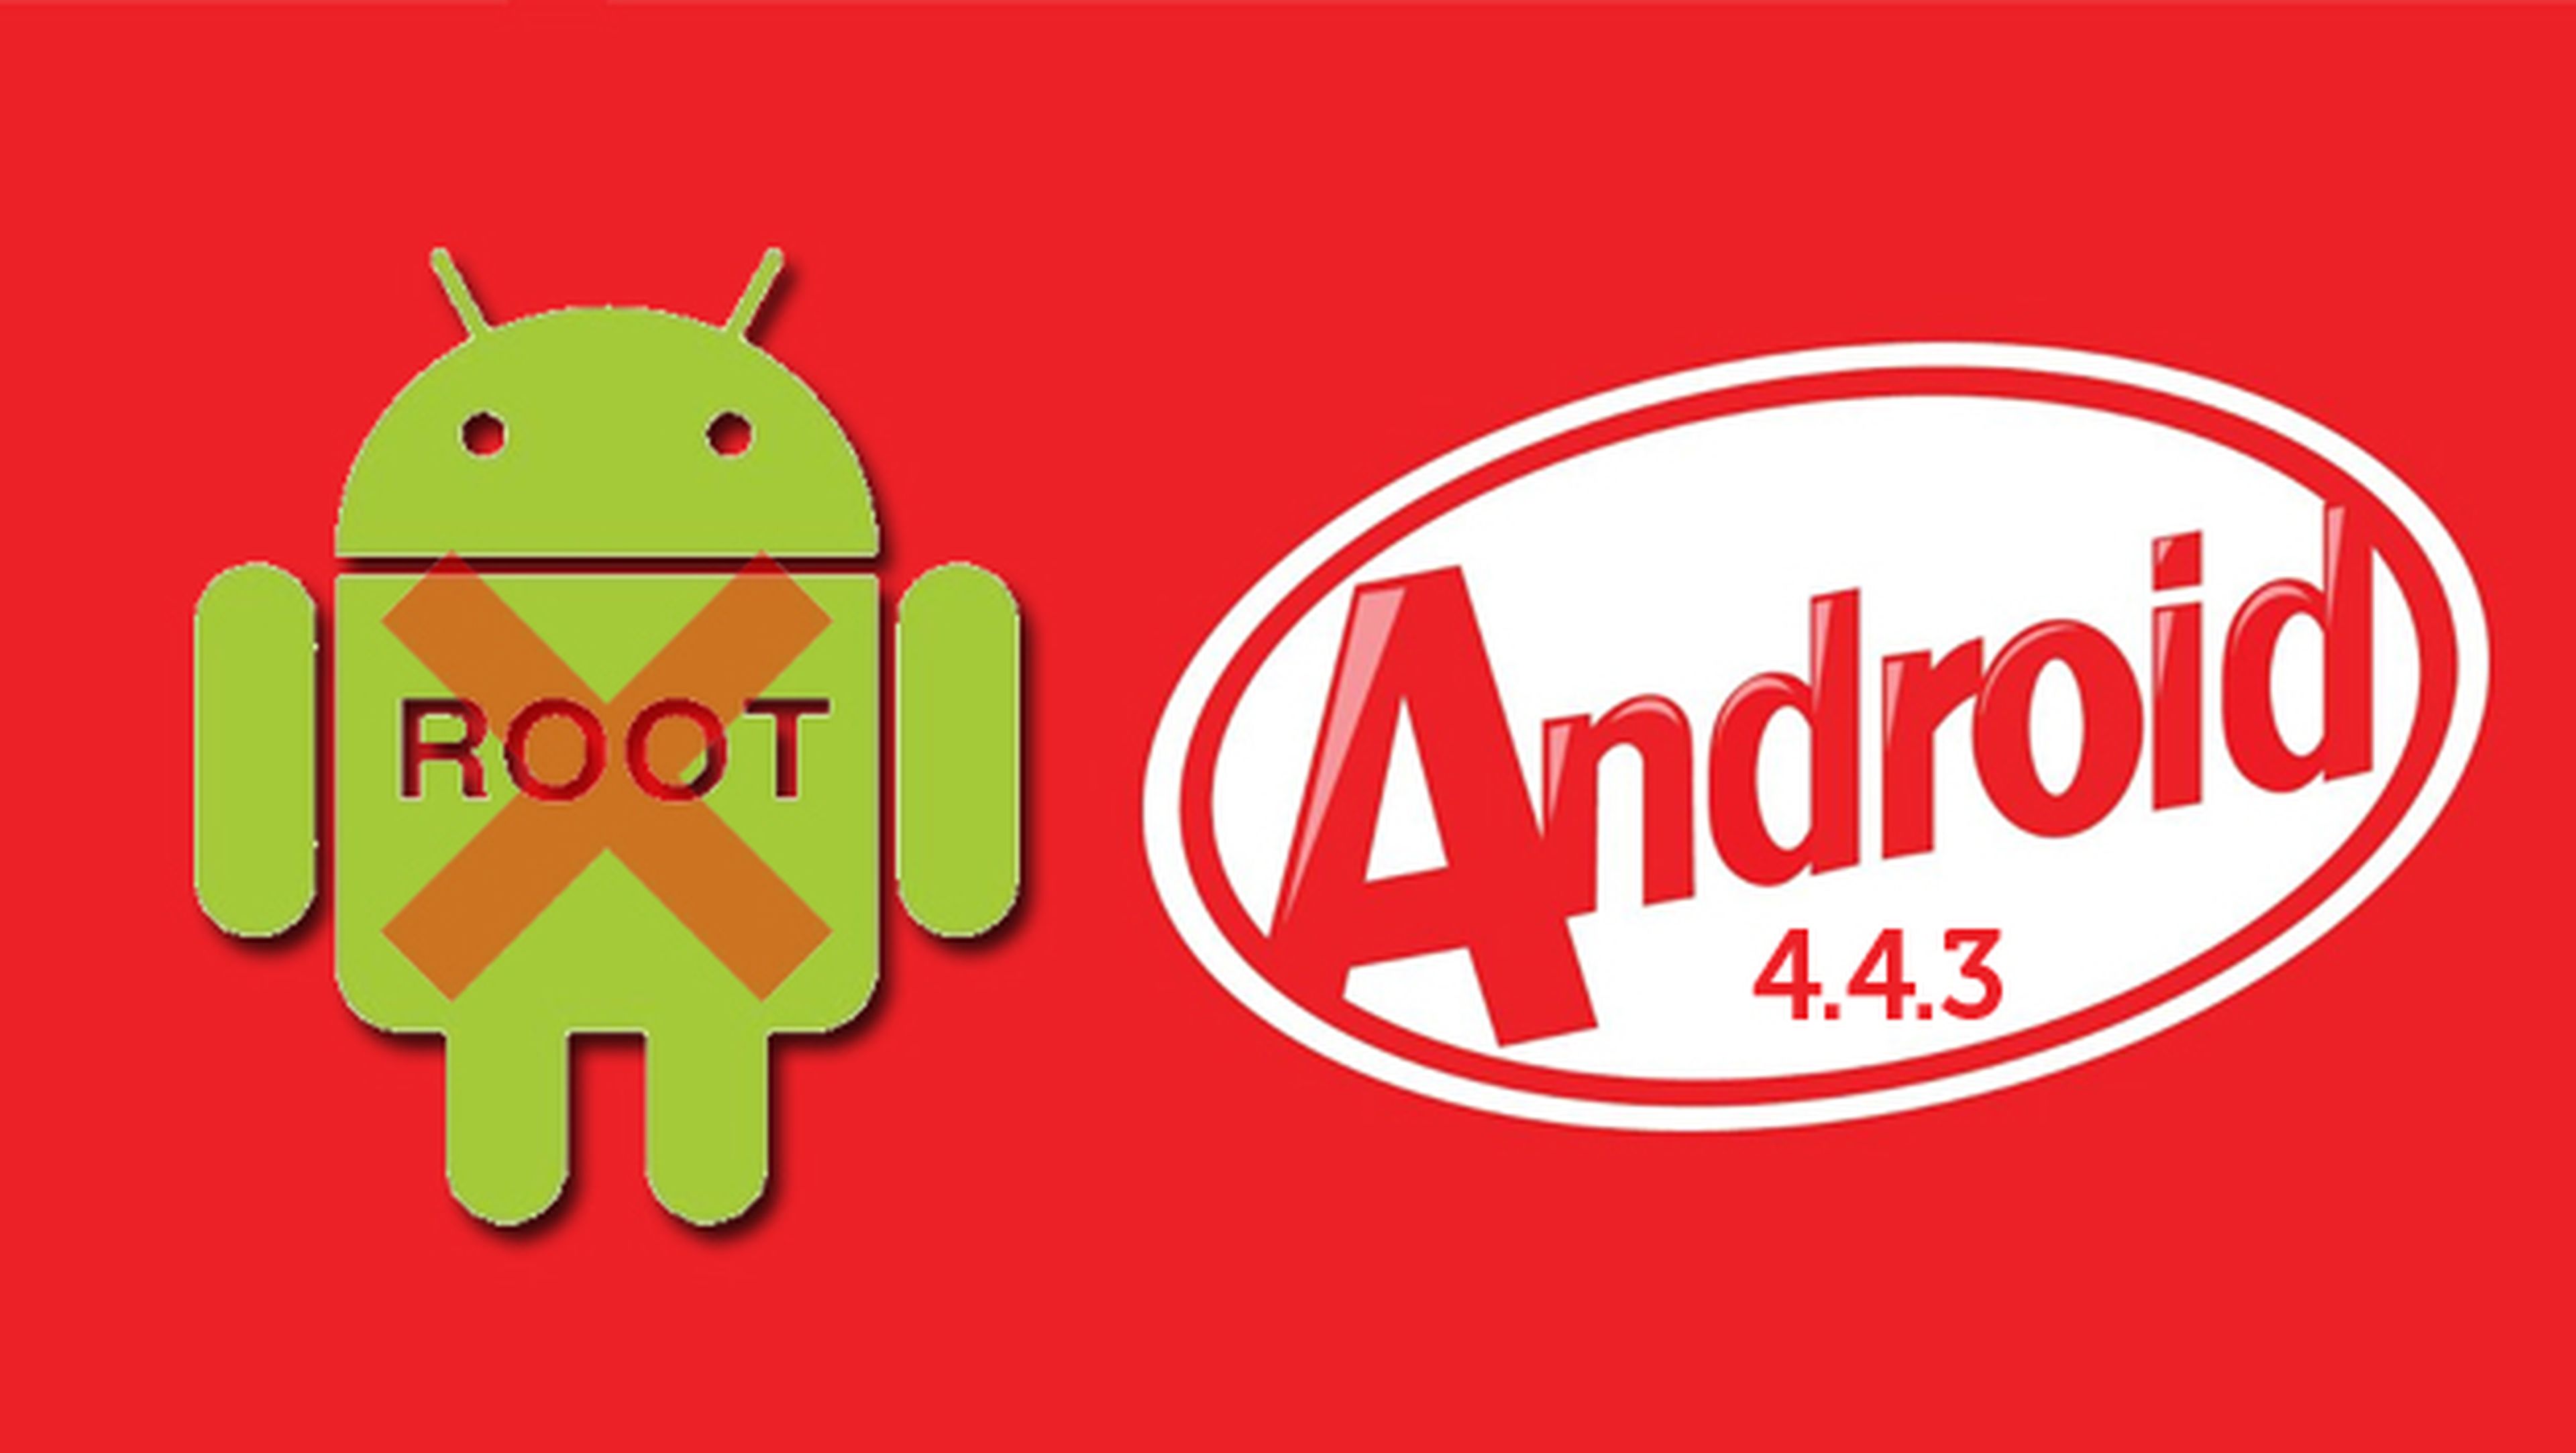 La actualización Android 4.4.3 podría evitar el acceso root